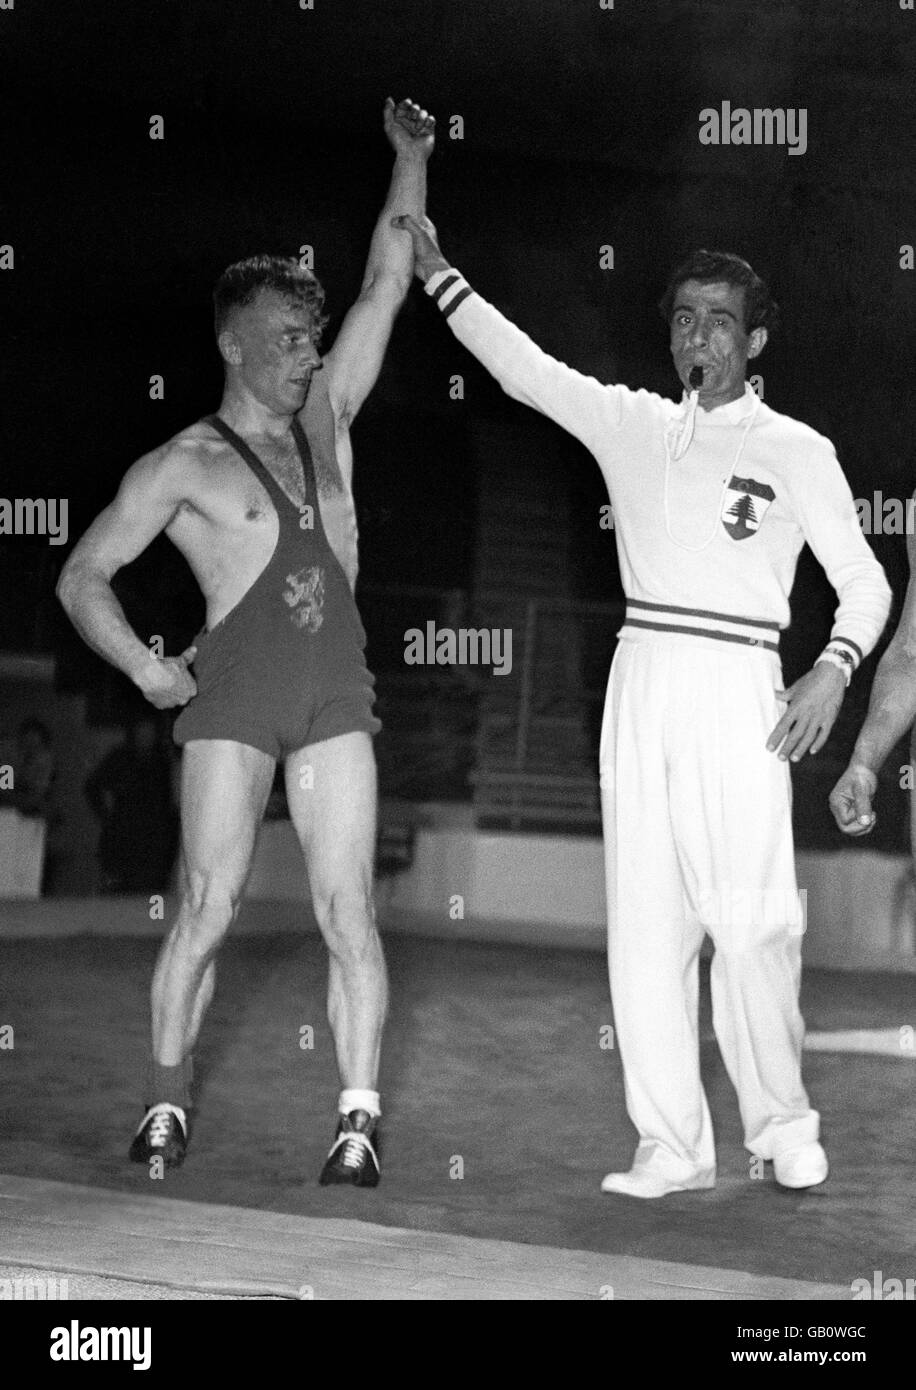 Jeux Olympiques de Londres 1948 - Wrestling - Earls court.Photo de l'un des gagnants qui a été proclamé après un match de lutte de style gréco-romain. Banque D'Images